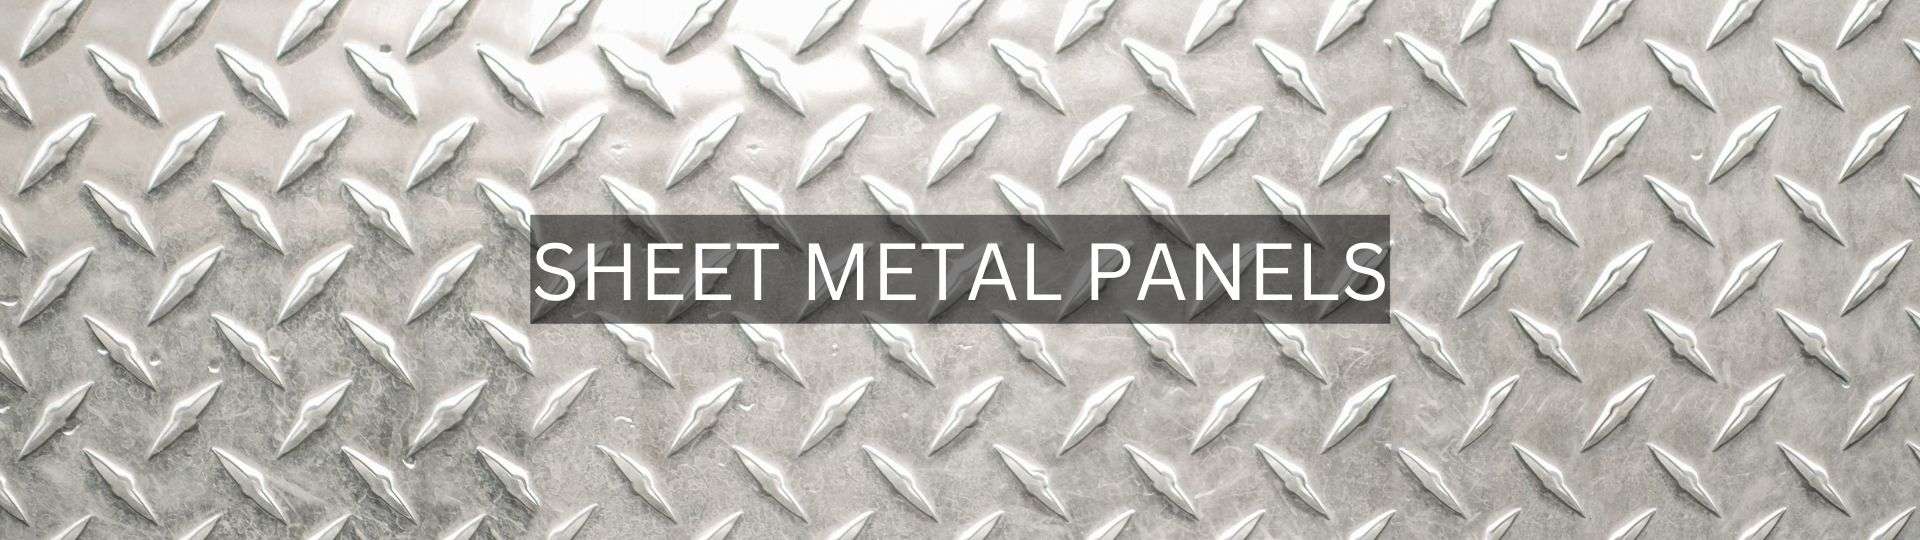 Best Sheet Metal Panels in Sonipat Haryana